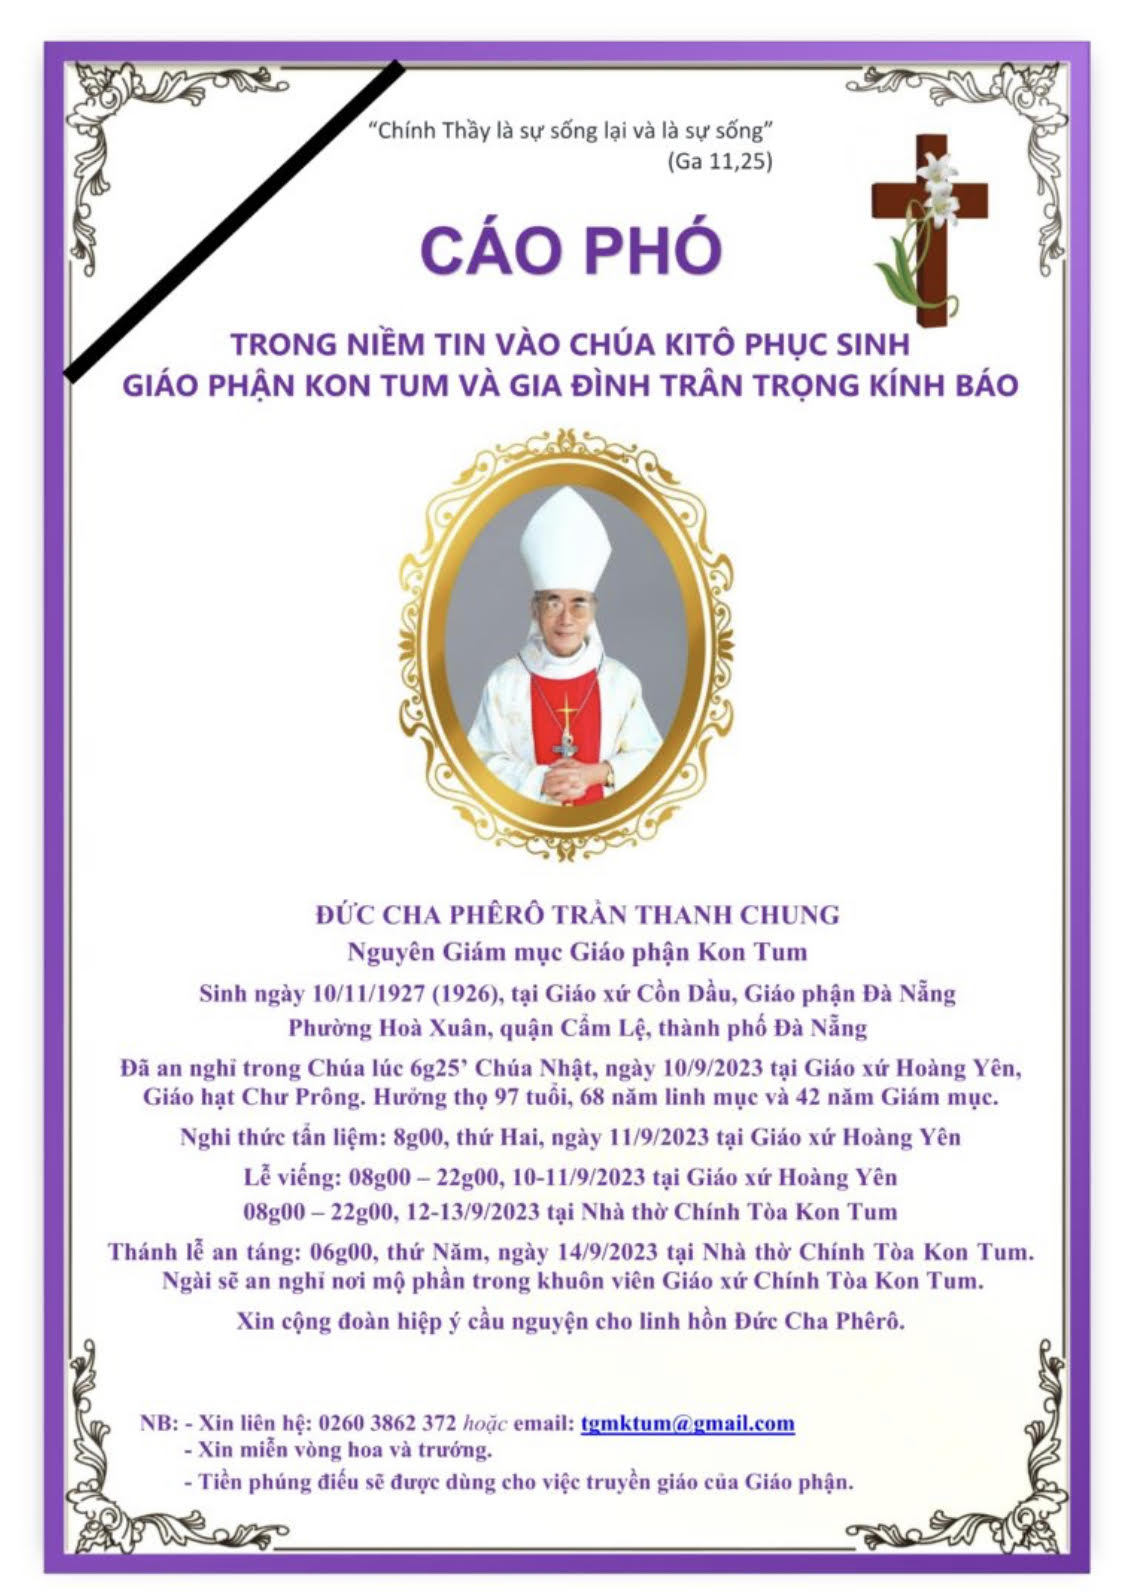 Cáo Phó: Đức Giám mục Phêrô Trần Thanh Chung